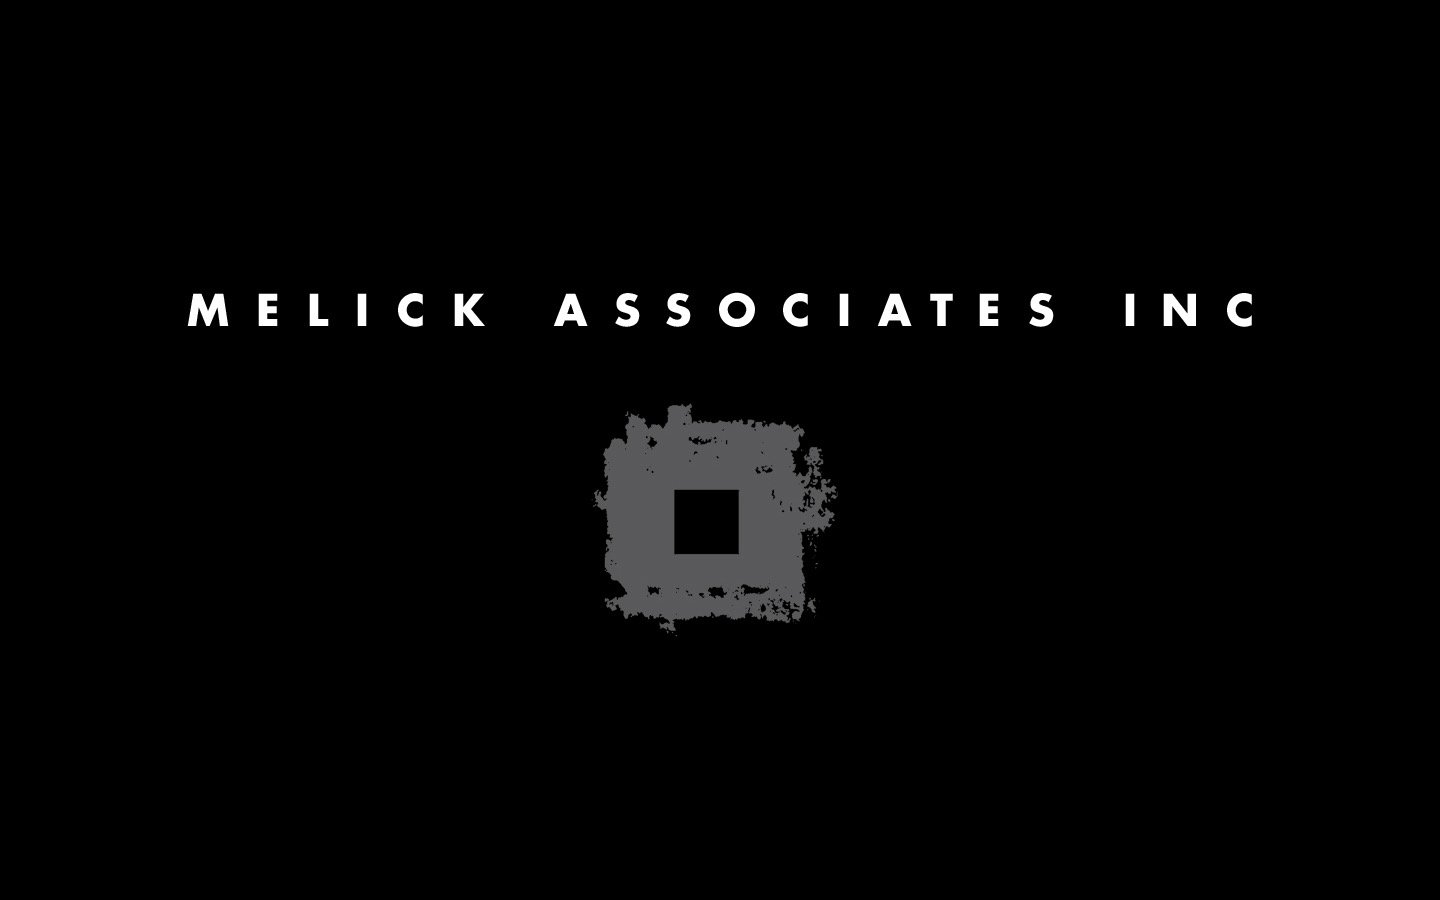 Melick Associates Inc